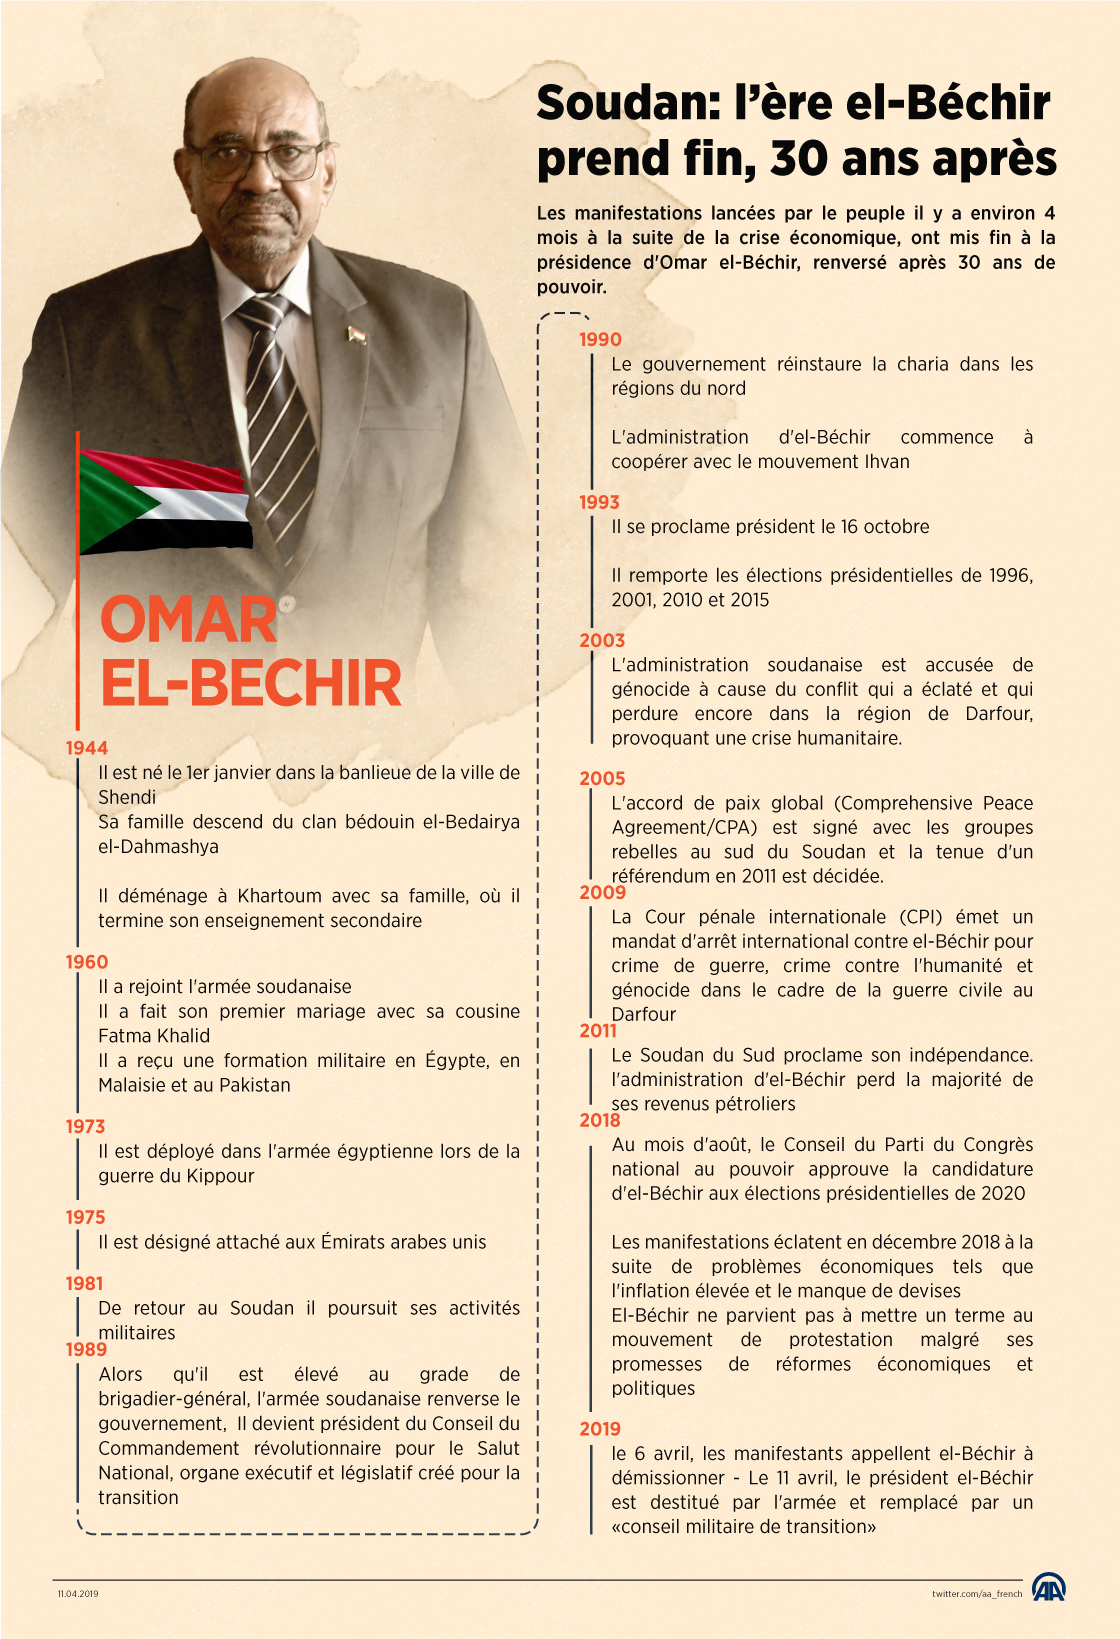 Omar el-Béchir, le "sauveur de la nation", écarté du pouvoir (Portrait)